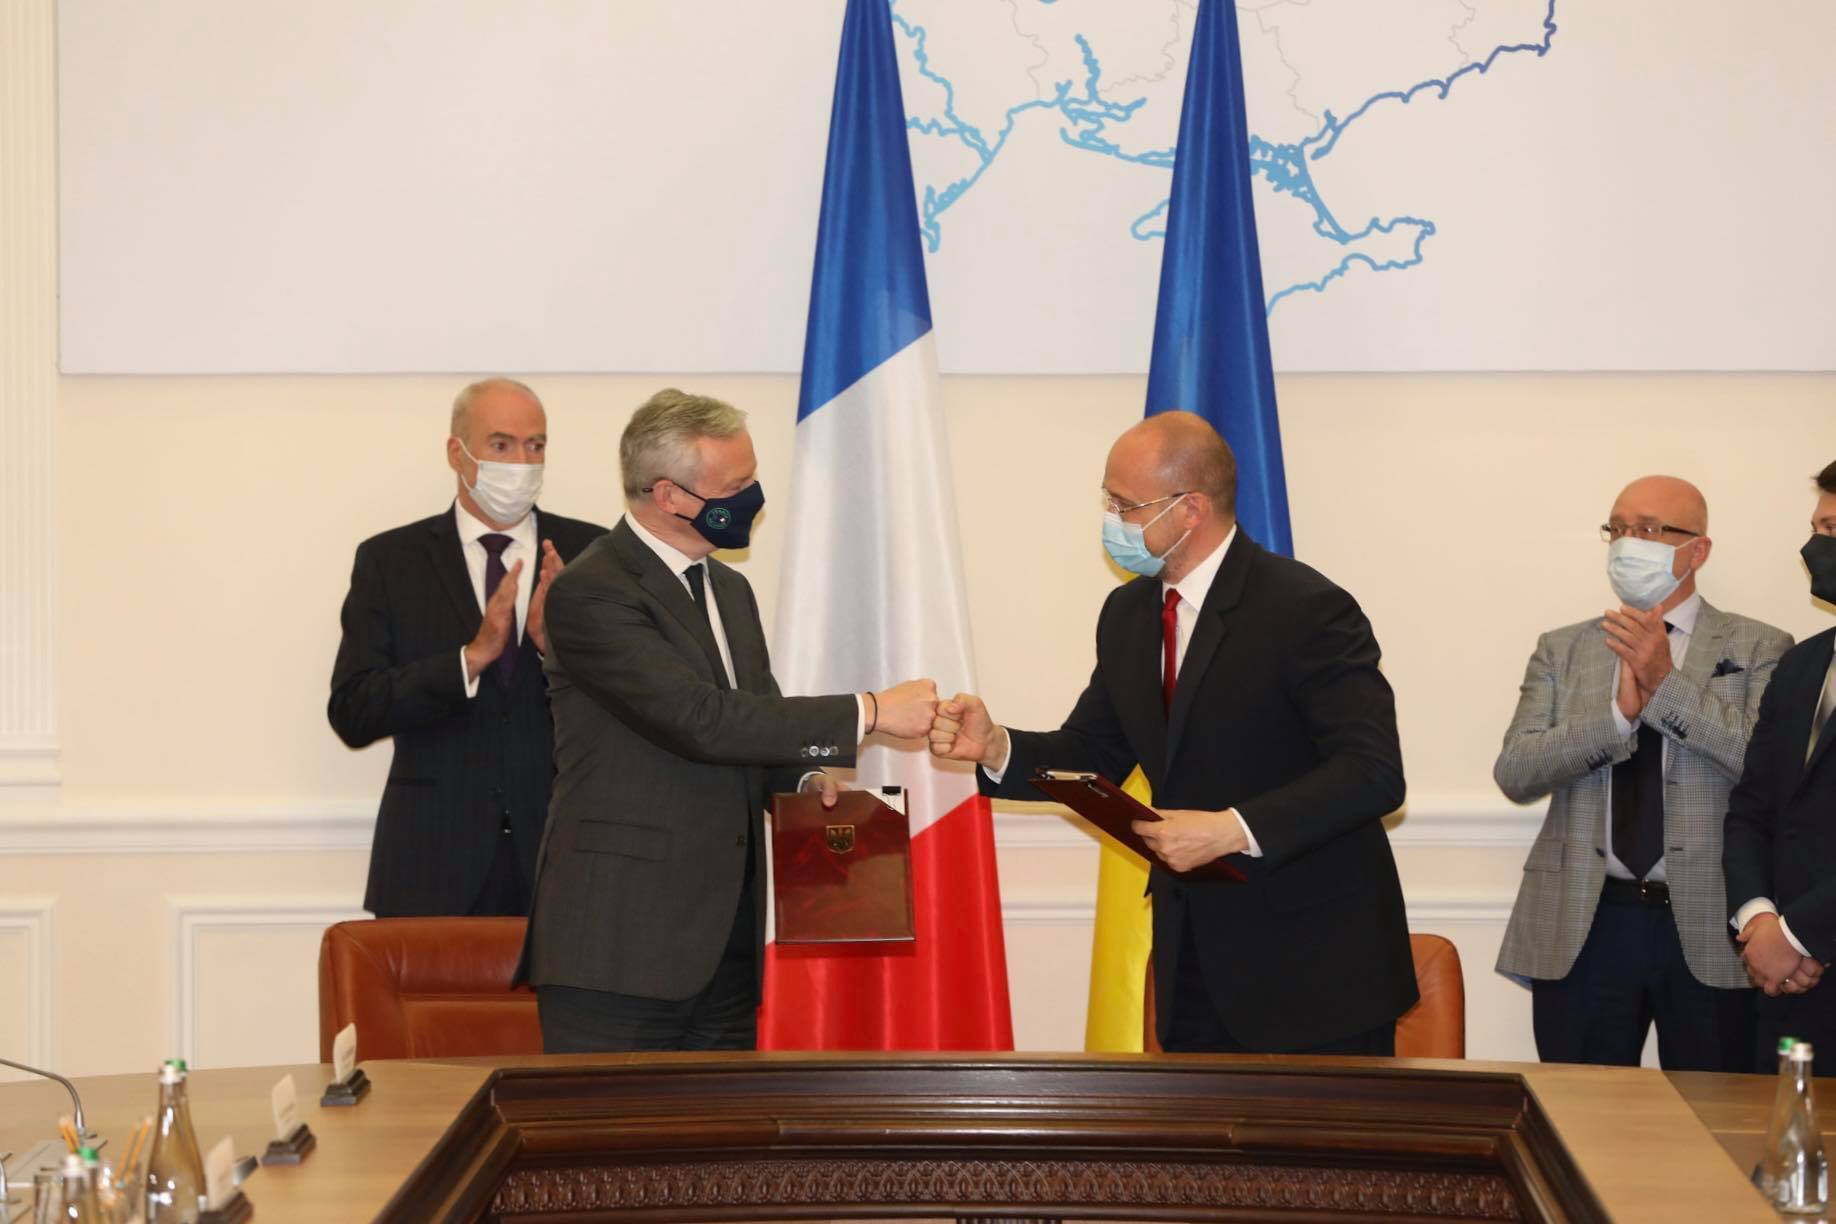 Україна і Франція підписали чотири угоди